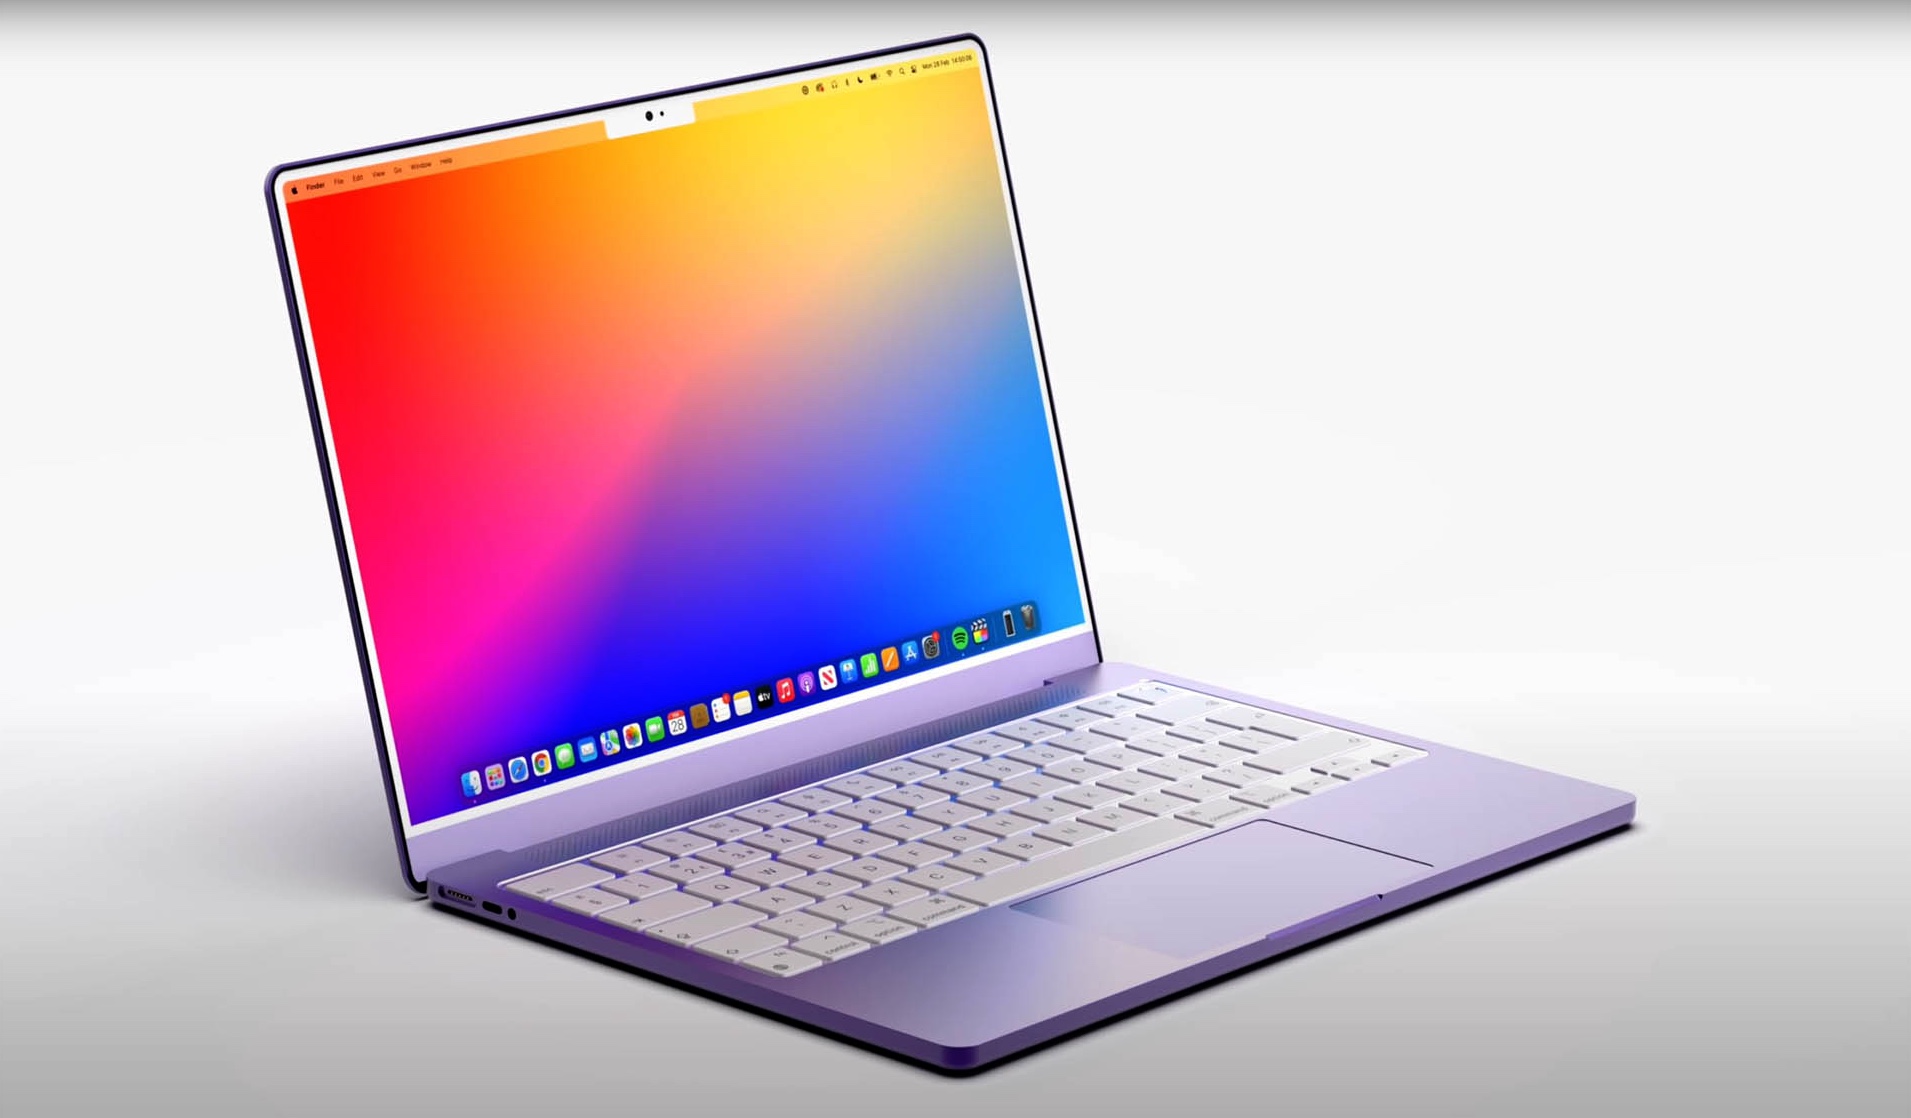 Vous vouliez un nouveau MacBook Air dans de nouveaux coloris ? C'est (a priori) raté pour cette fois